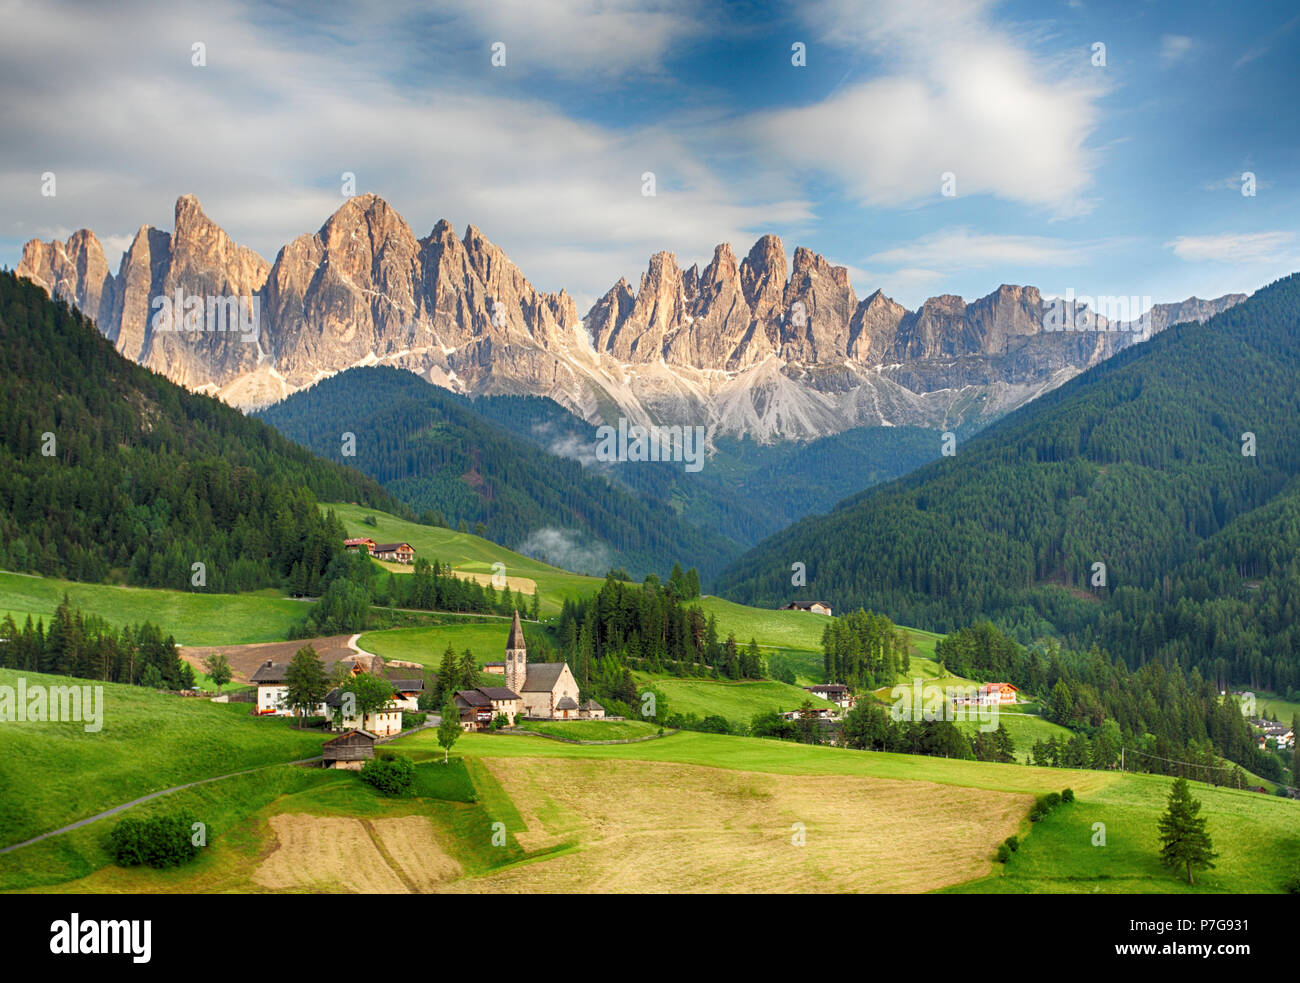 Amazing Funes valley in Dolomites, Italy Stock Photo - Alamy